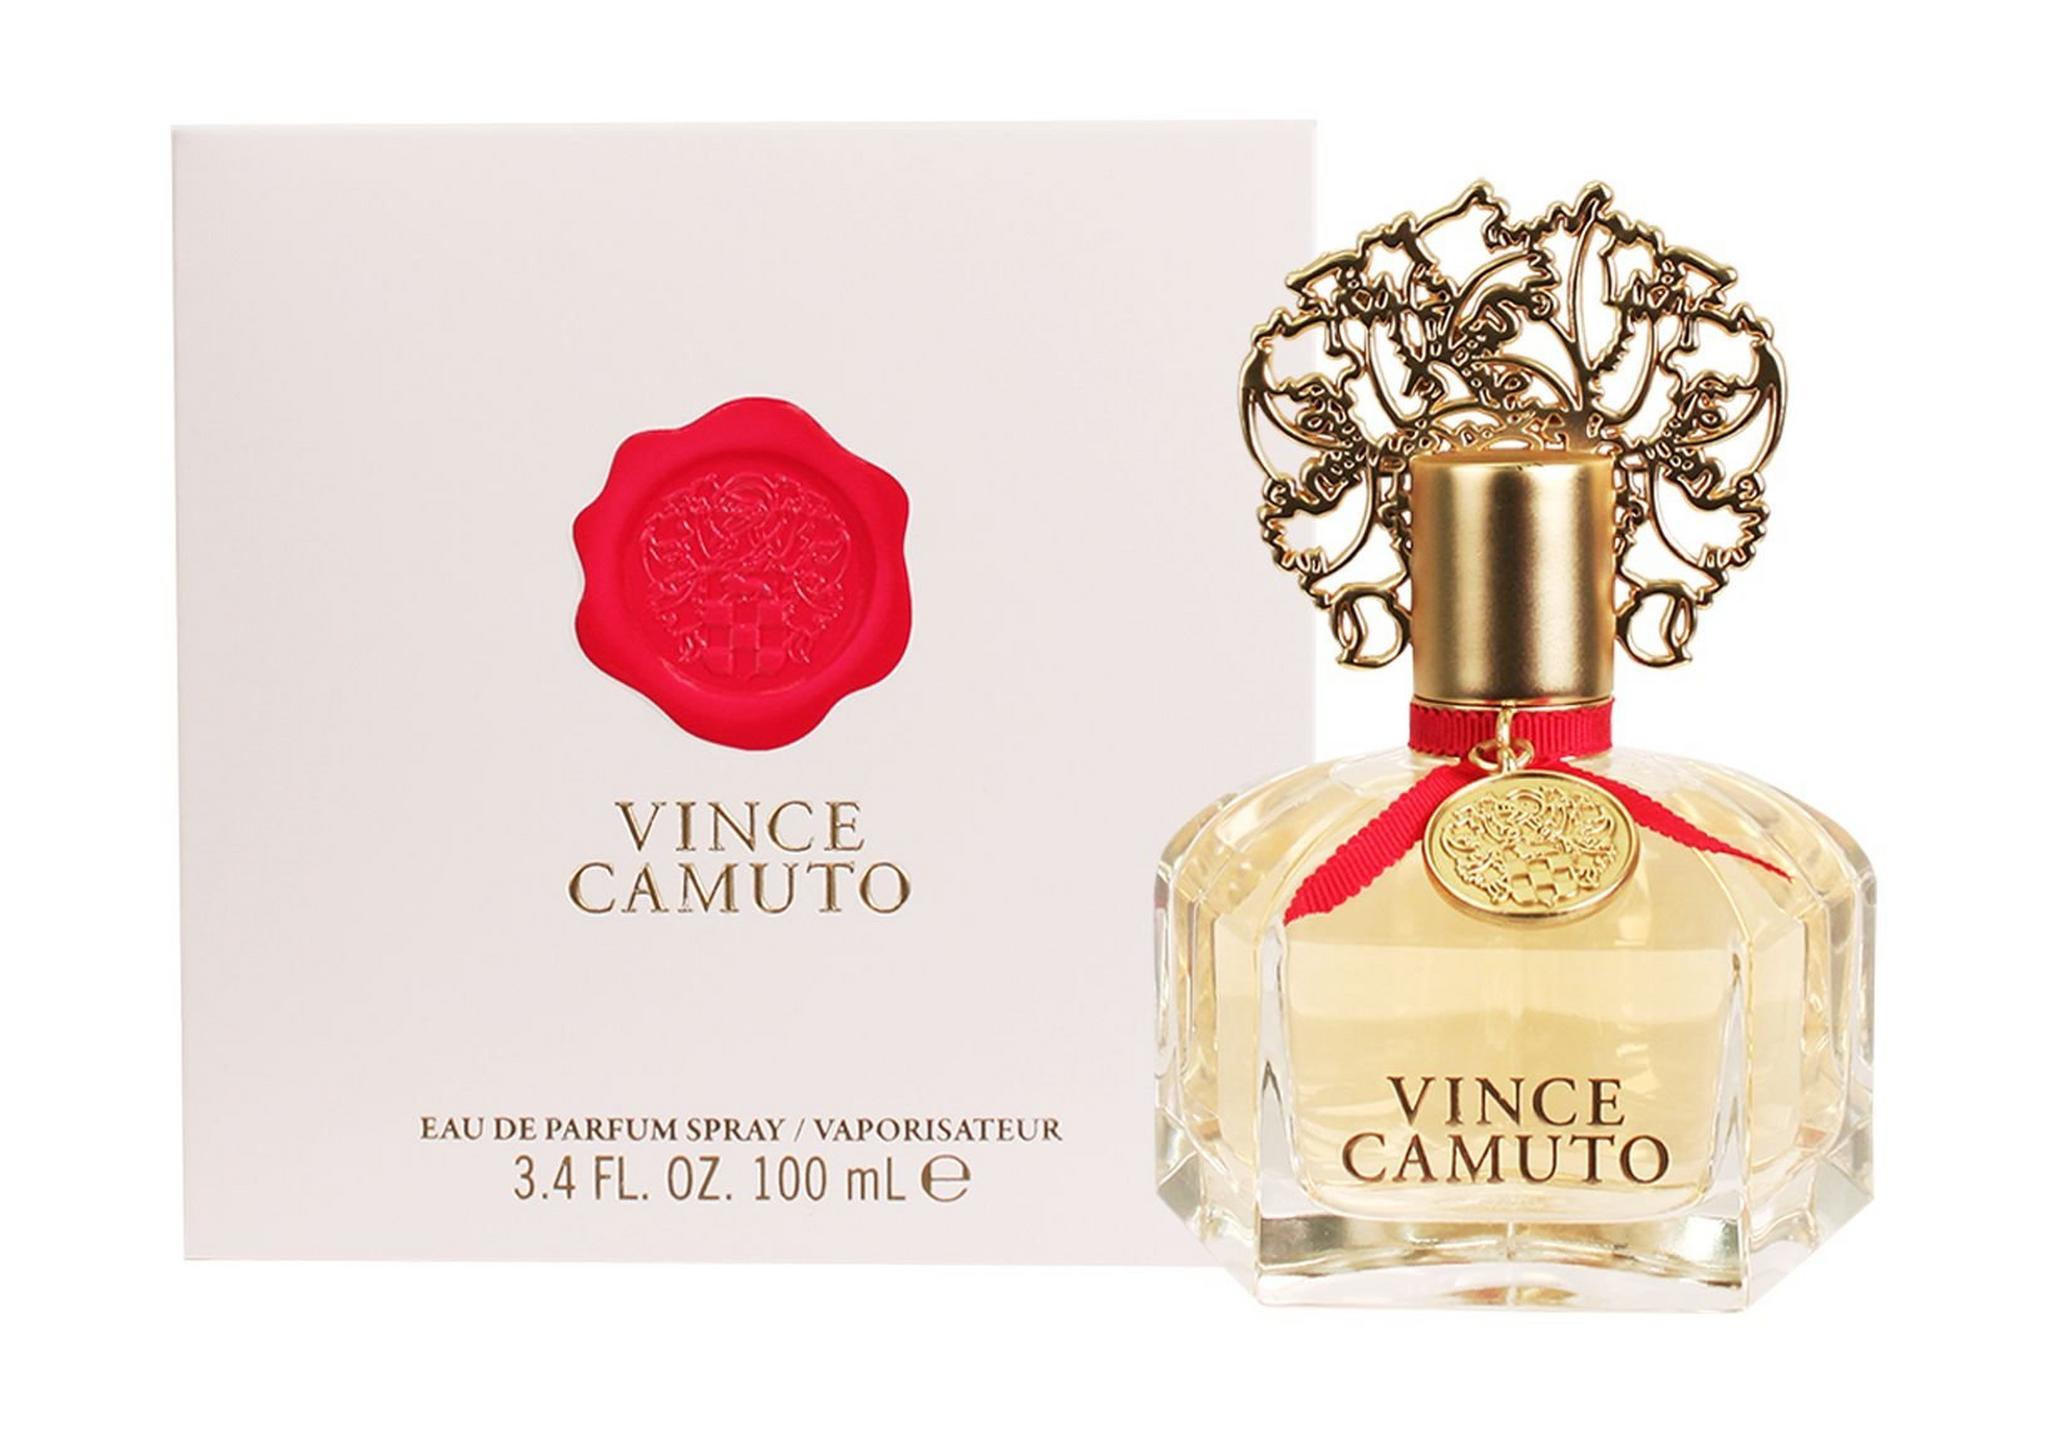 Vince Camuto Original 100ml For Women Eau de Parfum